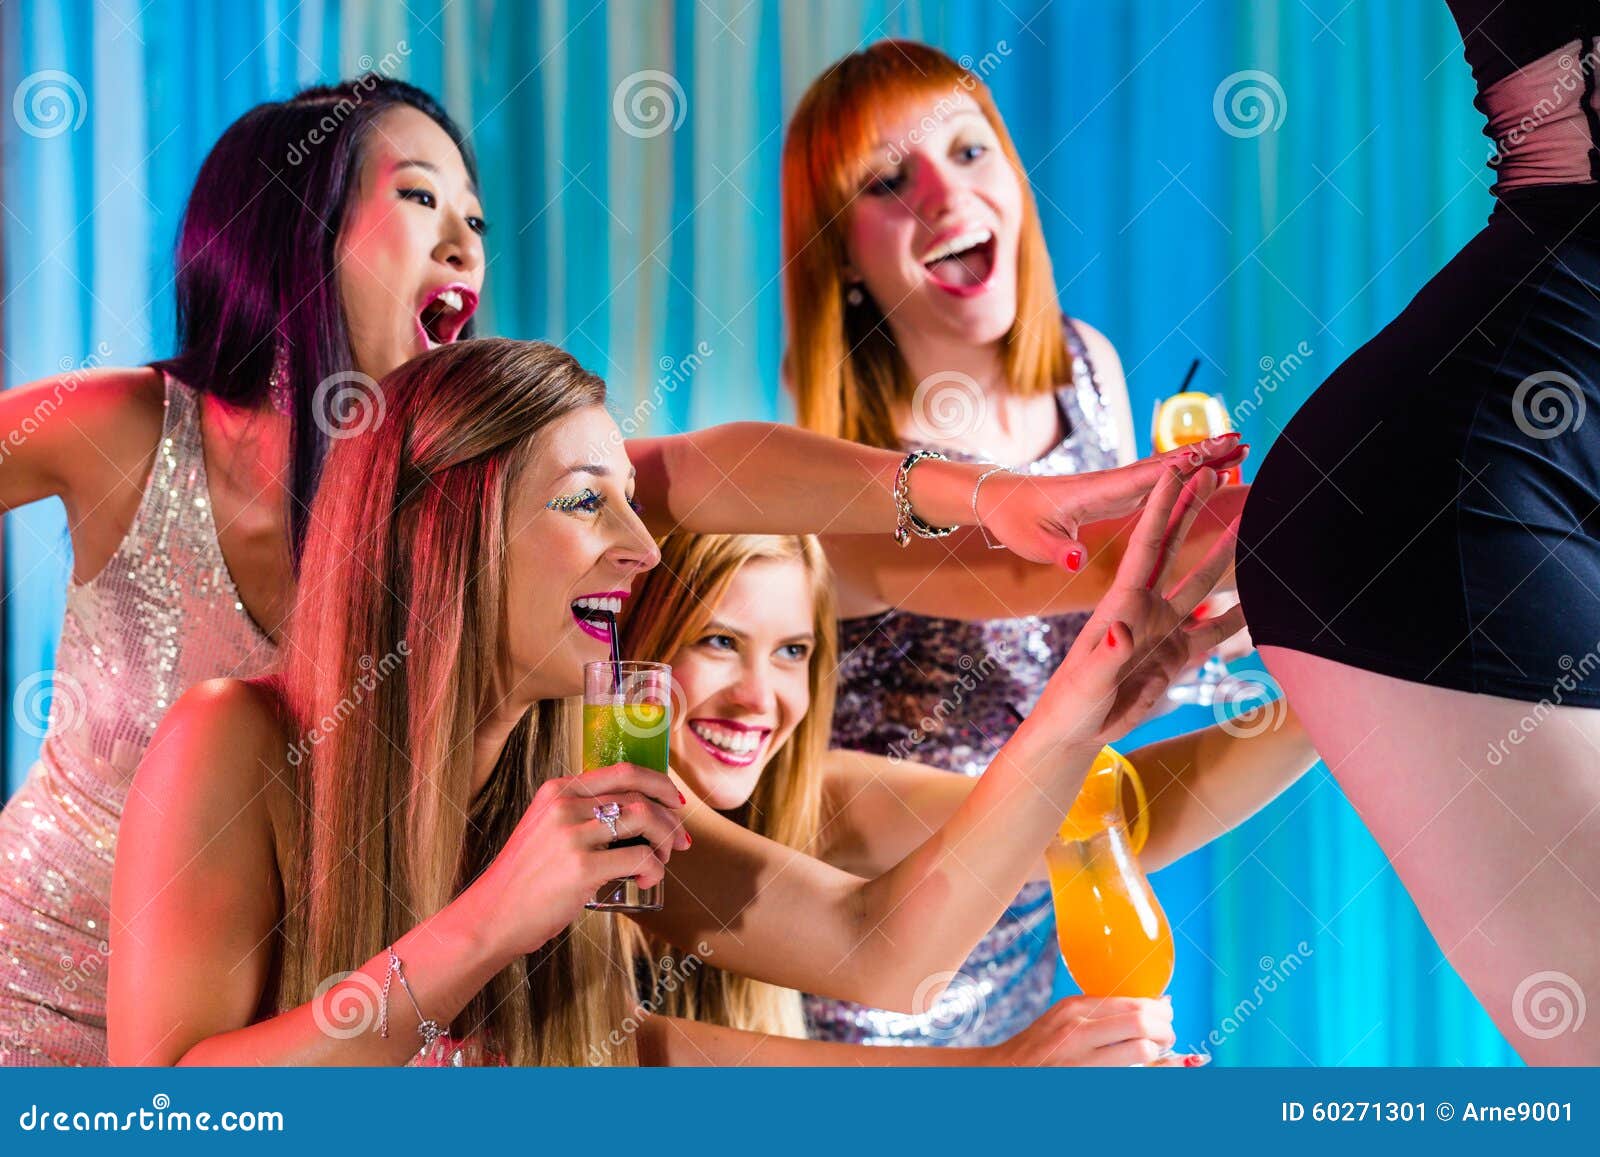 Супер видео взрослых. Женская вечеринка со стриптизером. Девушка ест со стриптизера. Acid Drinkers ''striptease''.